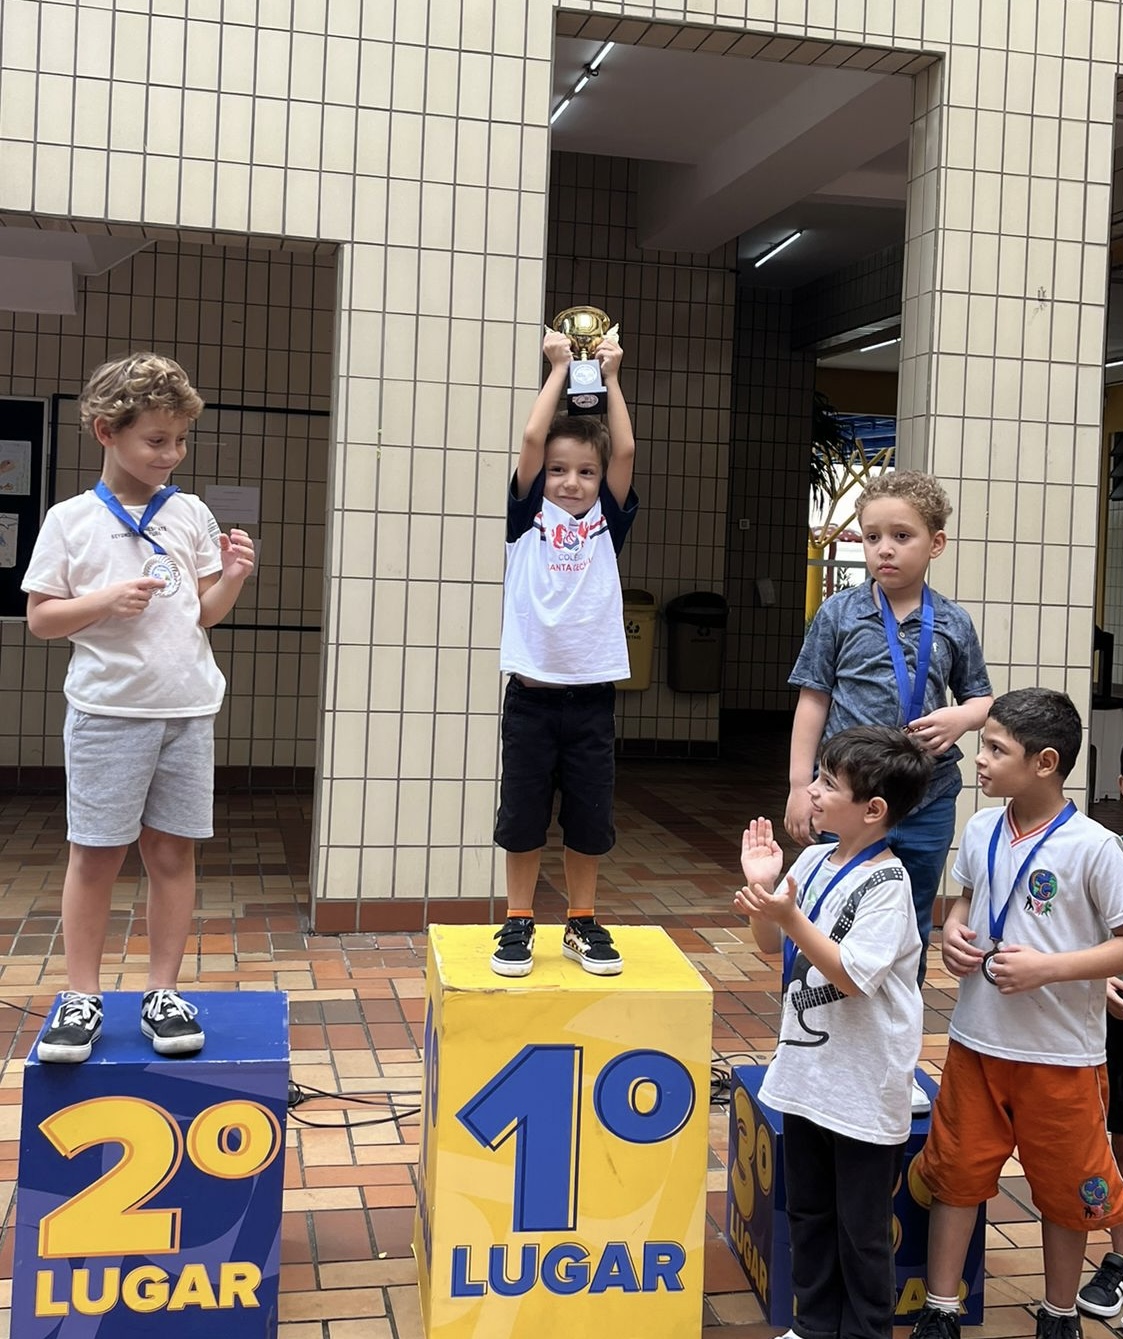 Santista de 8 anos se destaca em campeonatos de xadrez escolar no País -  Diário do Litoral